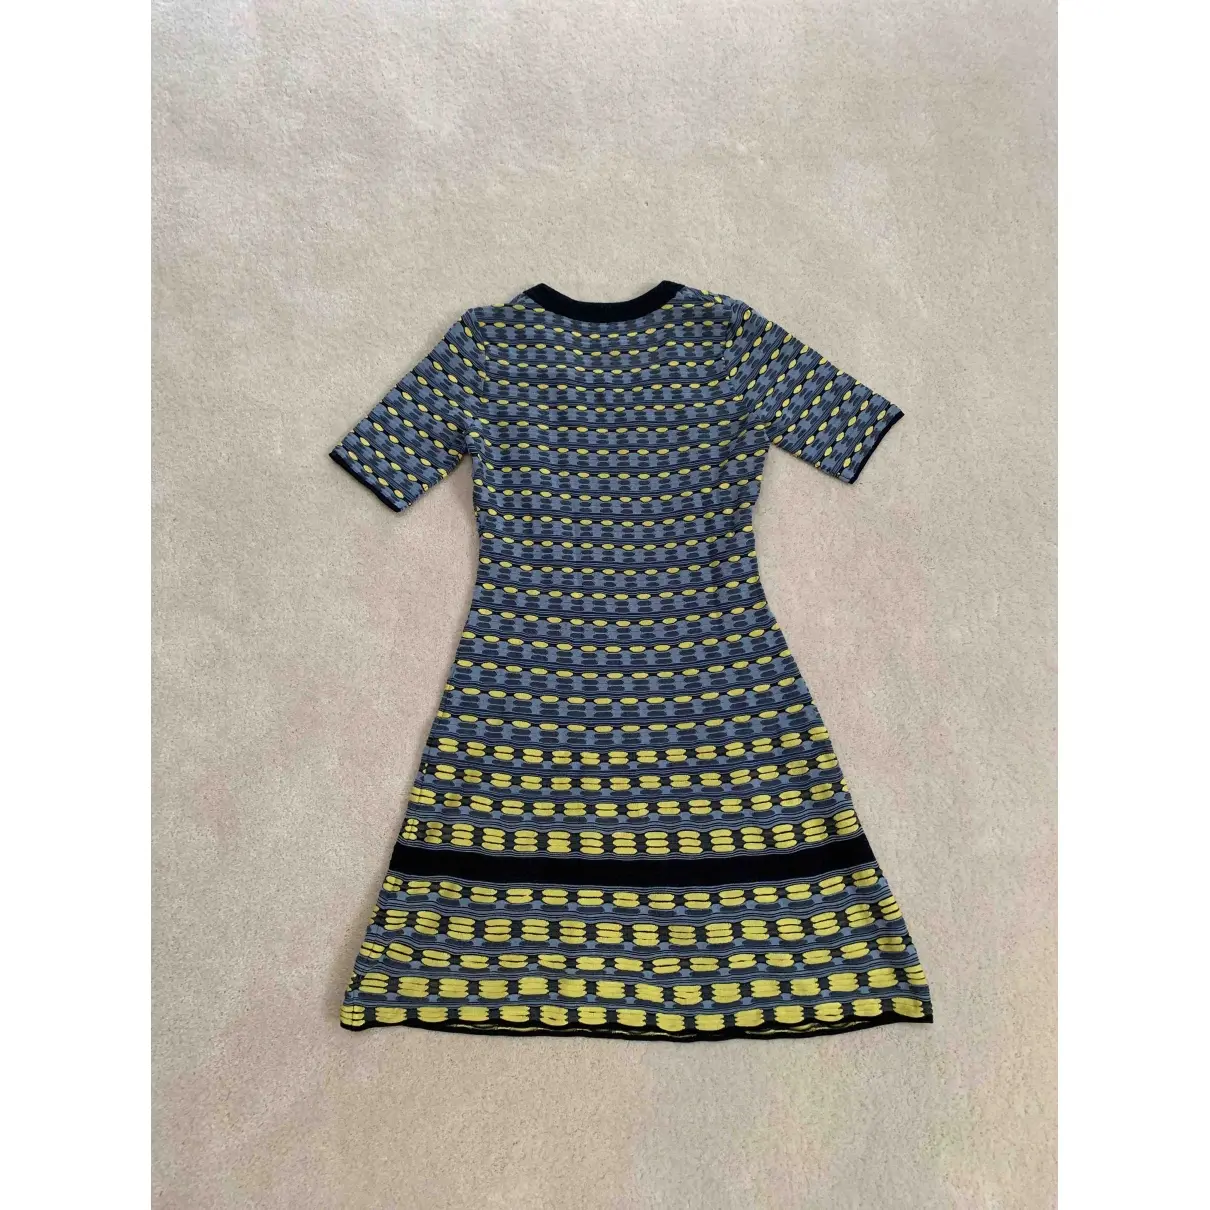 M Missoni Mini dress for sale